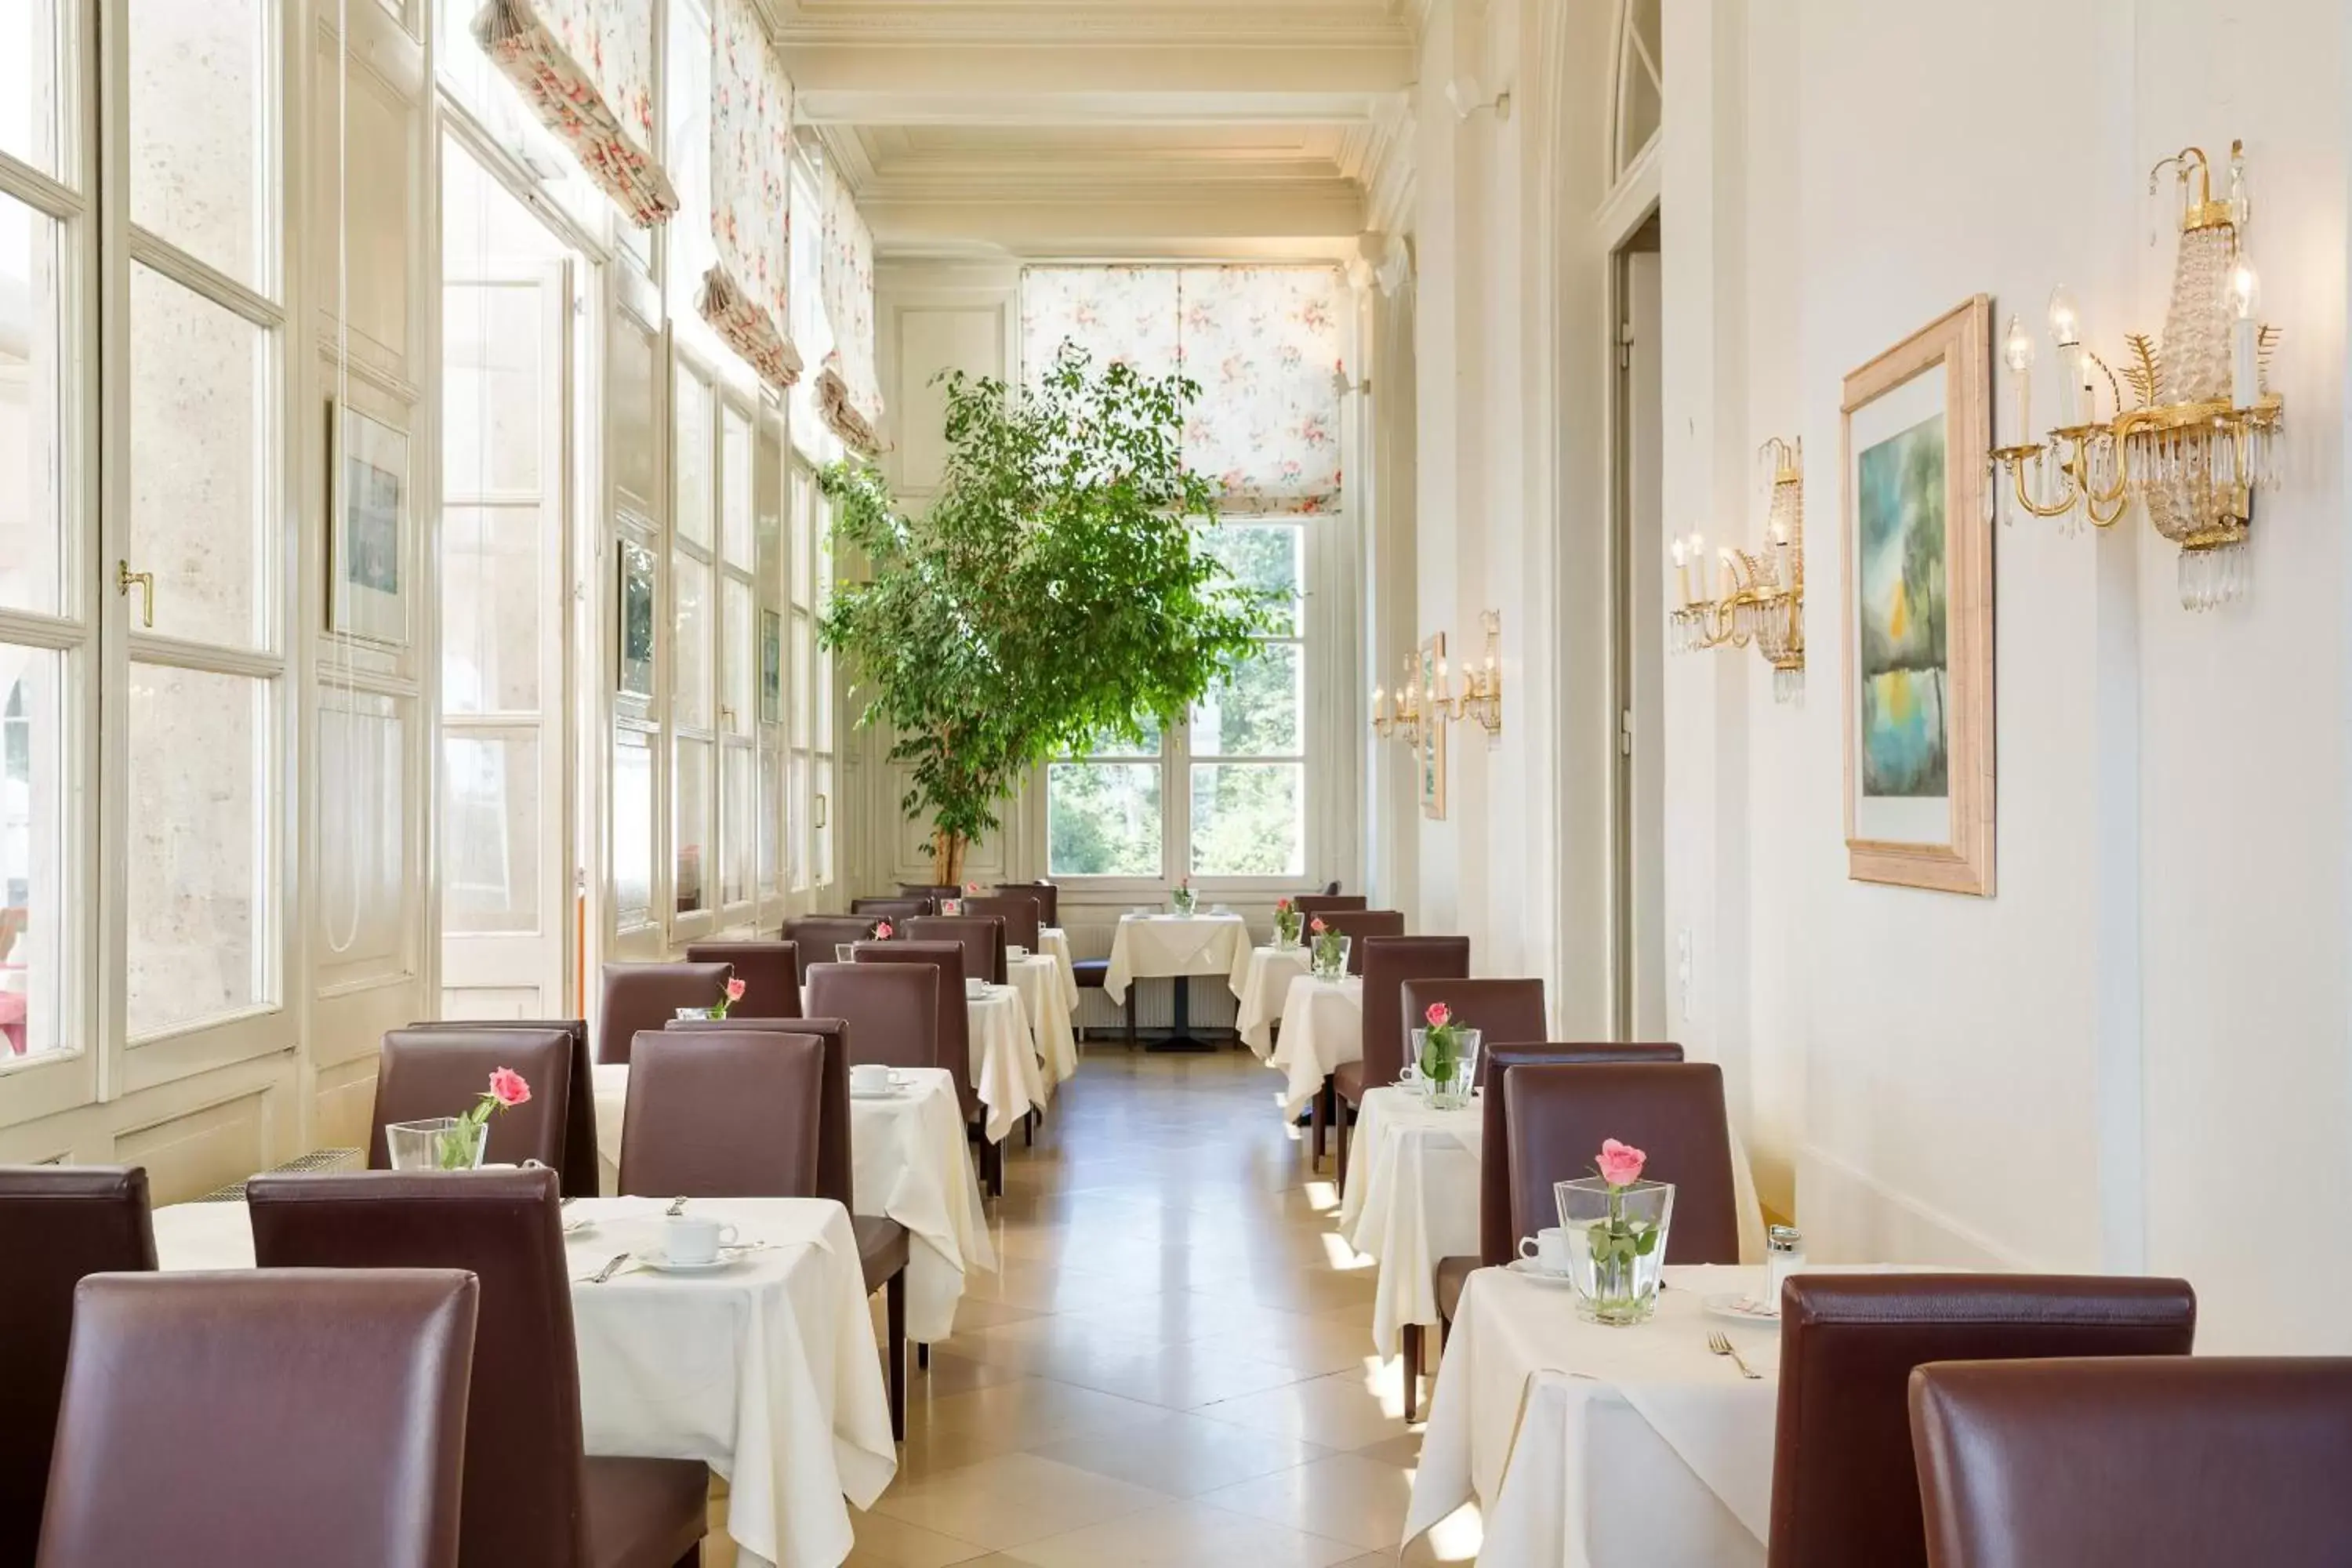 Restaurant/Places to Eat in Austria Trend Hotel Schloss Wilhelminenberg Wien